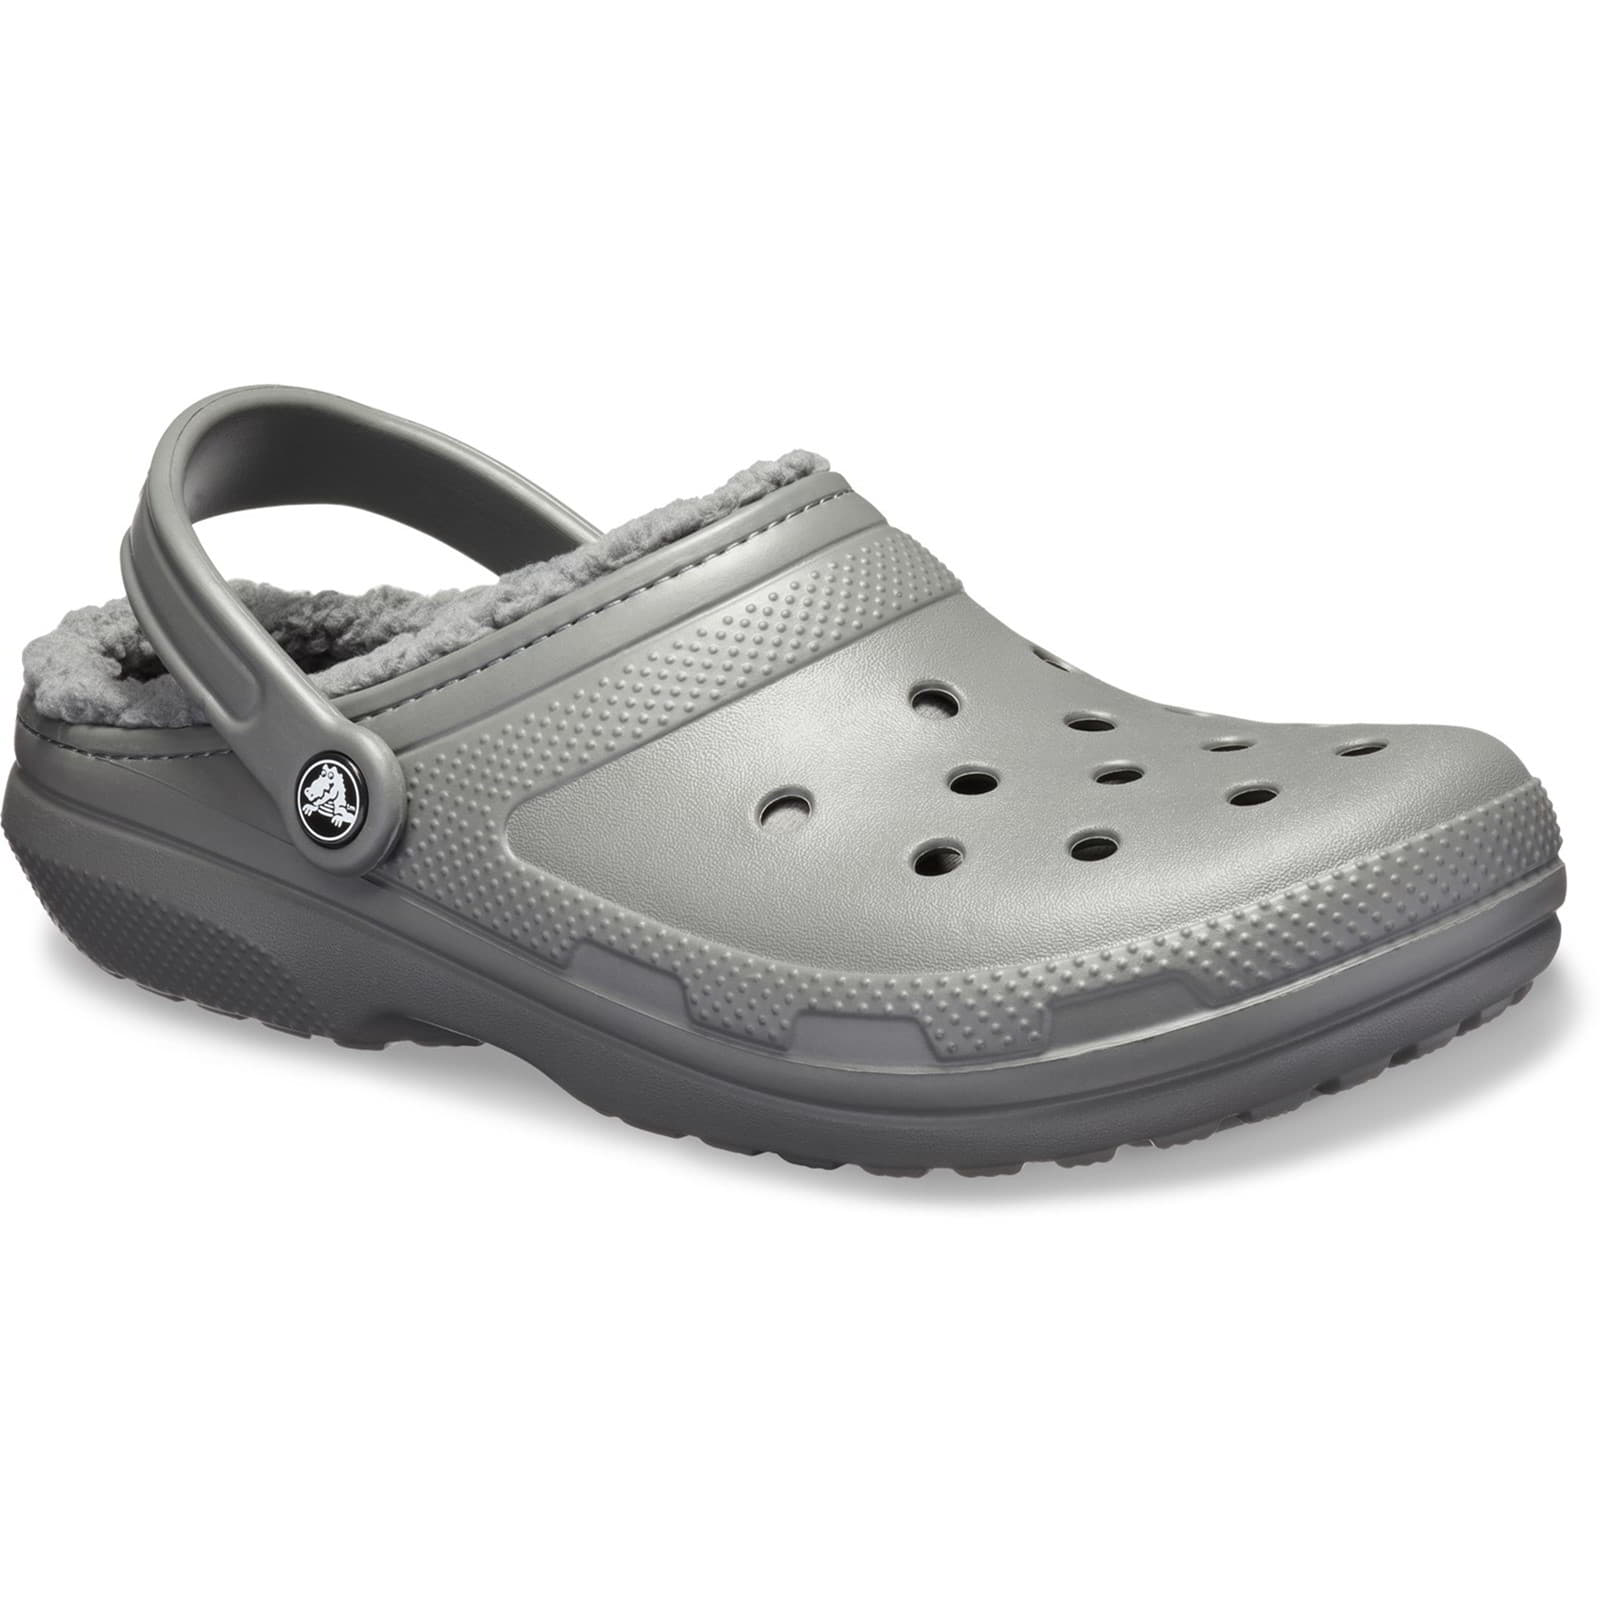 Crocs Men's Women's Classic Lined Clog Warm Slip On Slippers Shoes - UK M8-W9 / EU 42-43 / US M9-W11